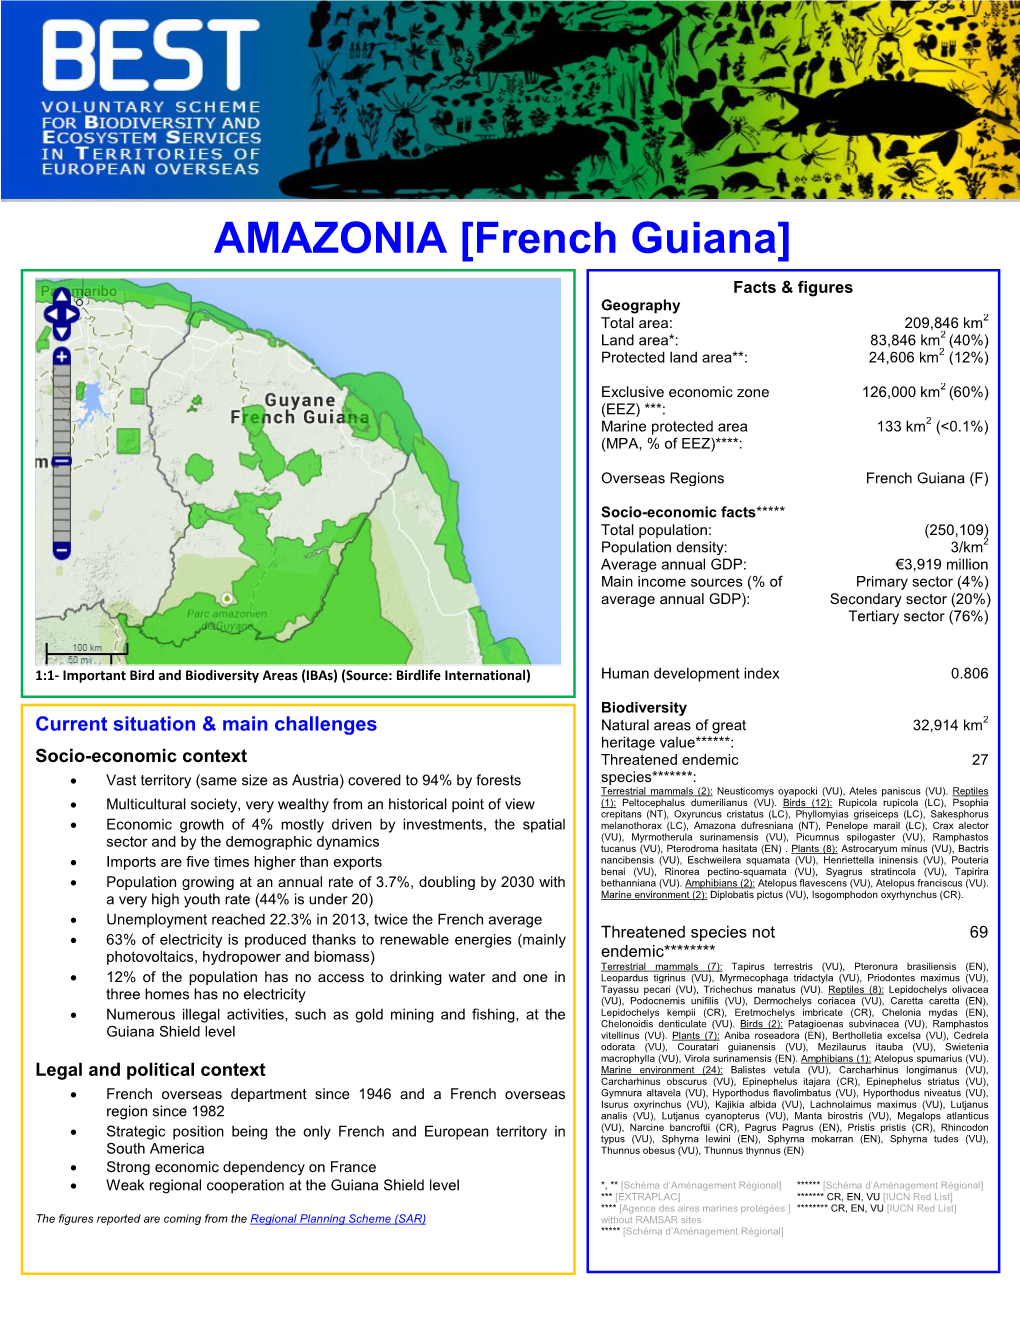 French Guiana]